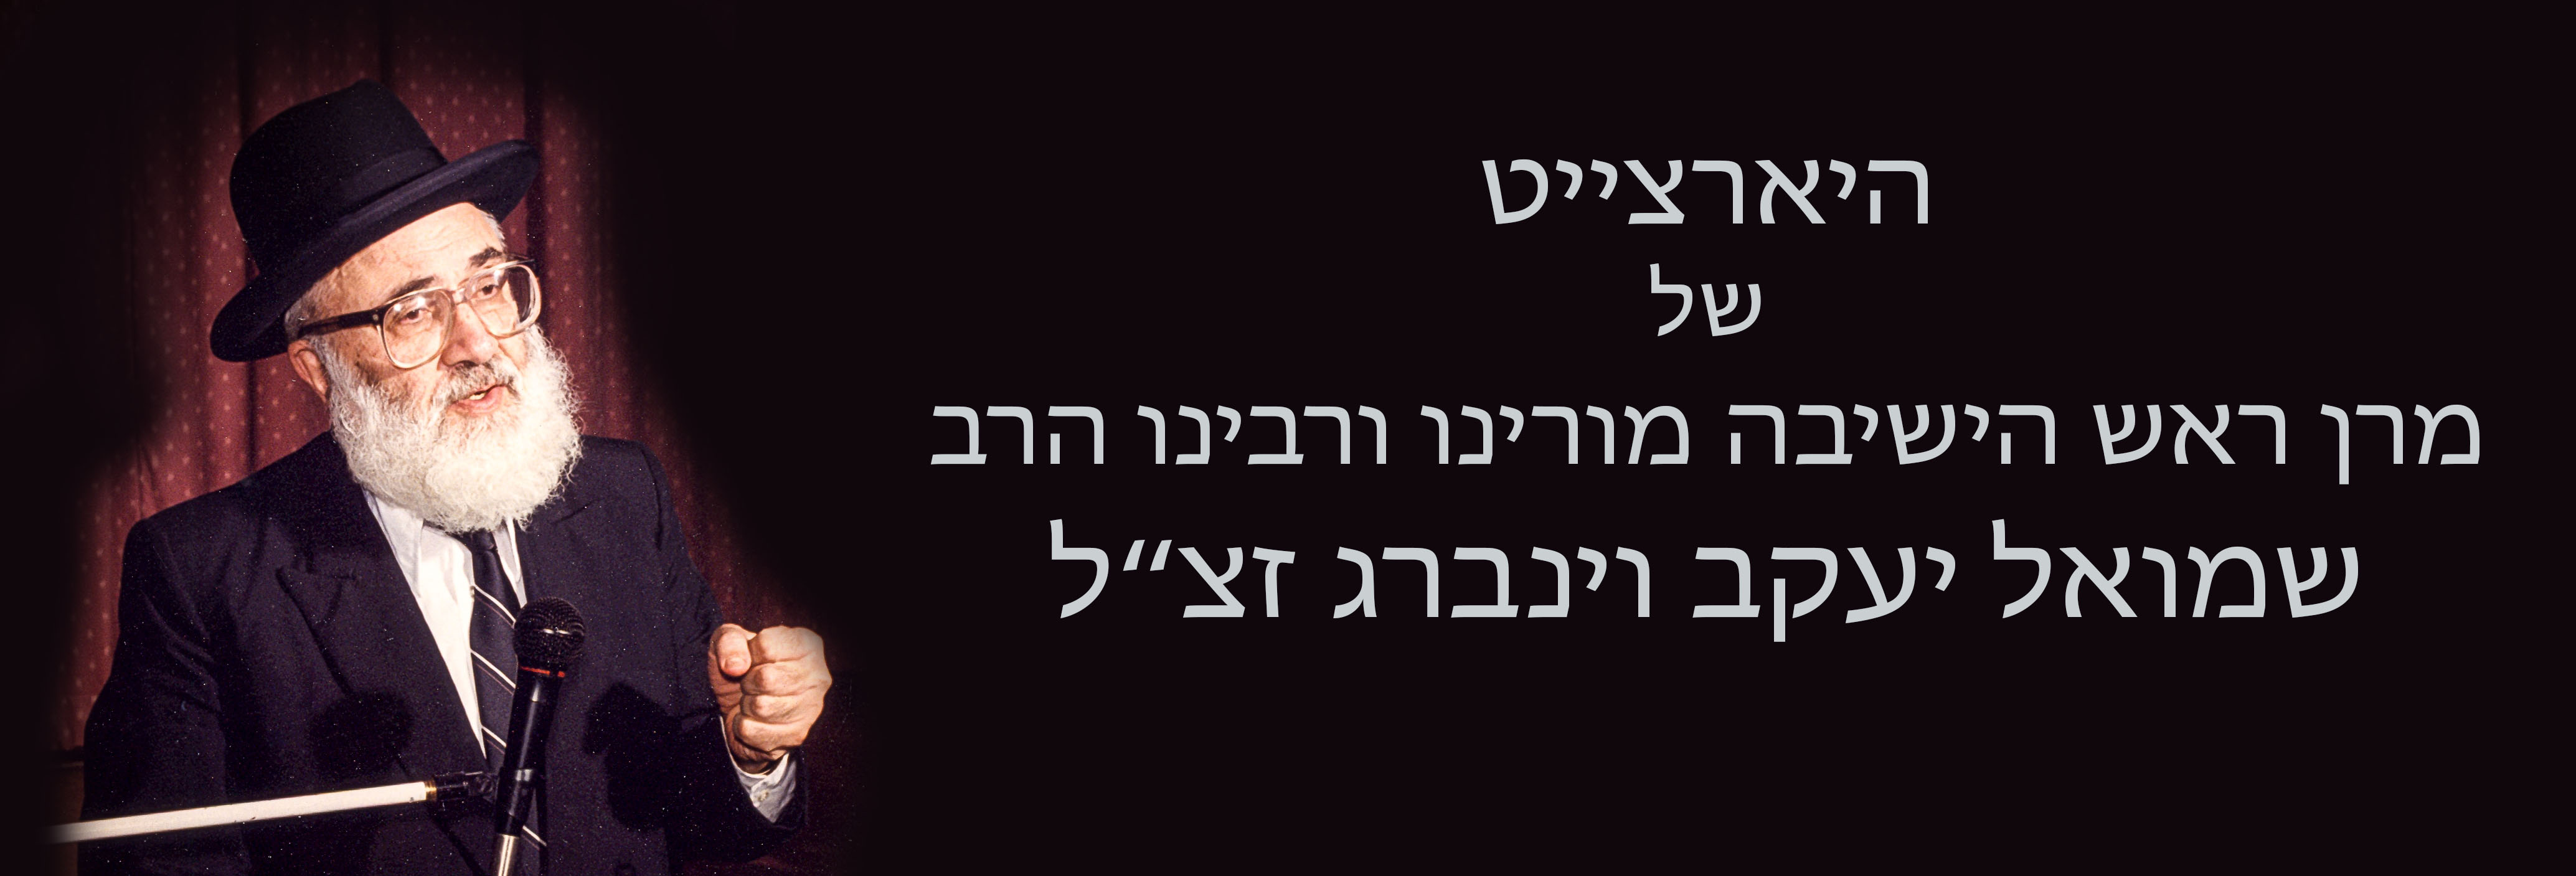 24th Yahrtzeit of the Rosh Hayeshiva, Moreinu V’Rabbeinu Harav Shmuel Yaakov Weinberg zt”l